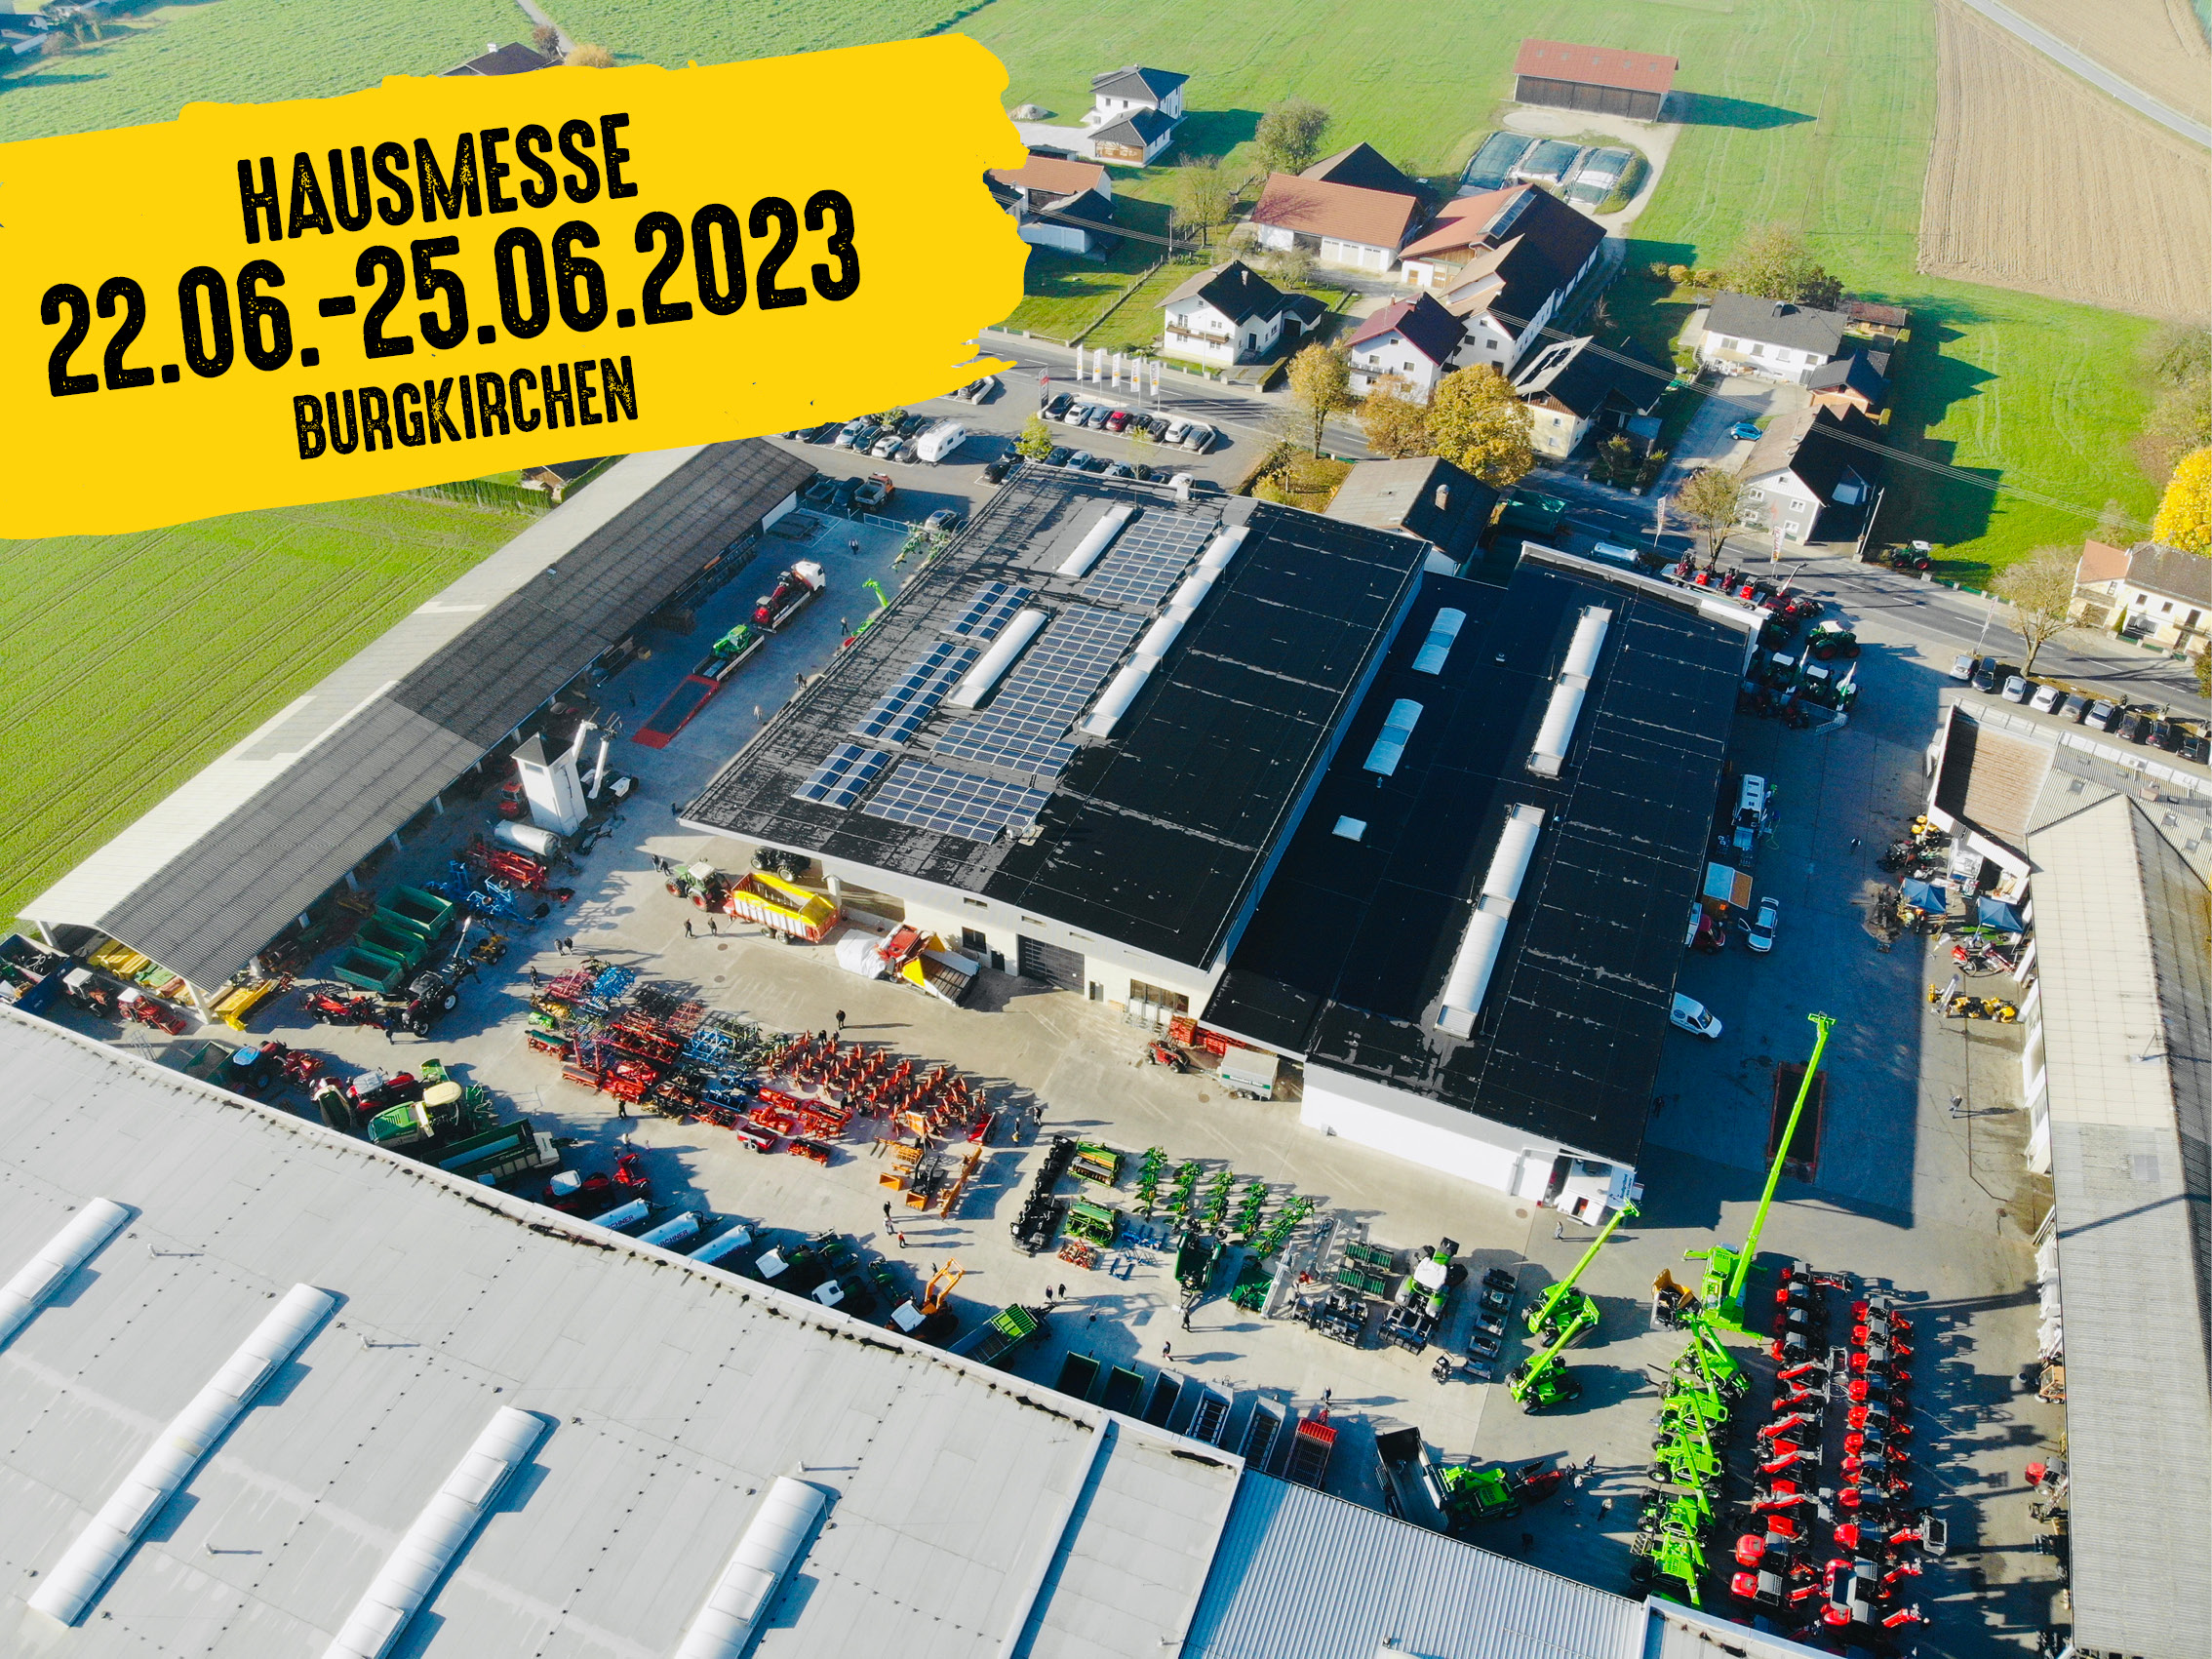 Mauch Hausmesse in Burgkirchen am 22. - 25. Juni 2023